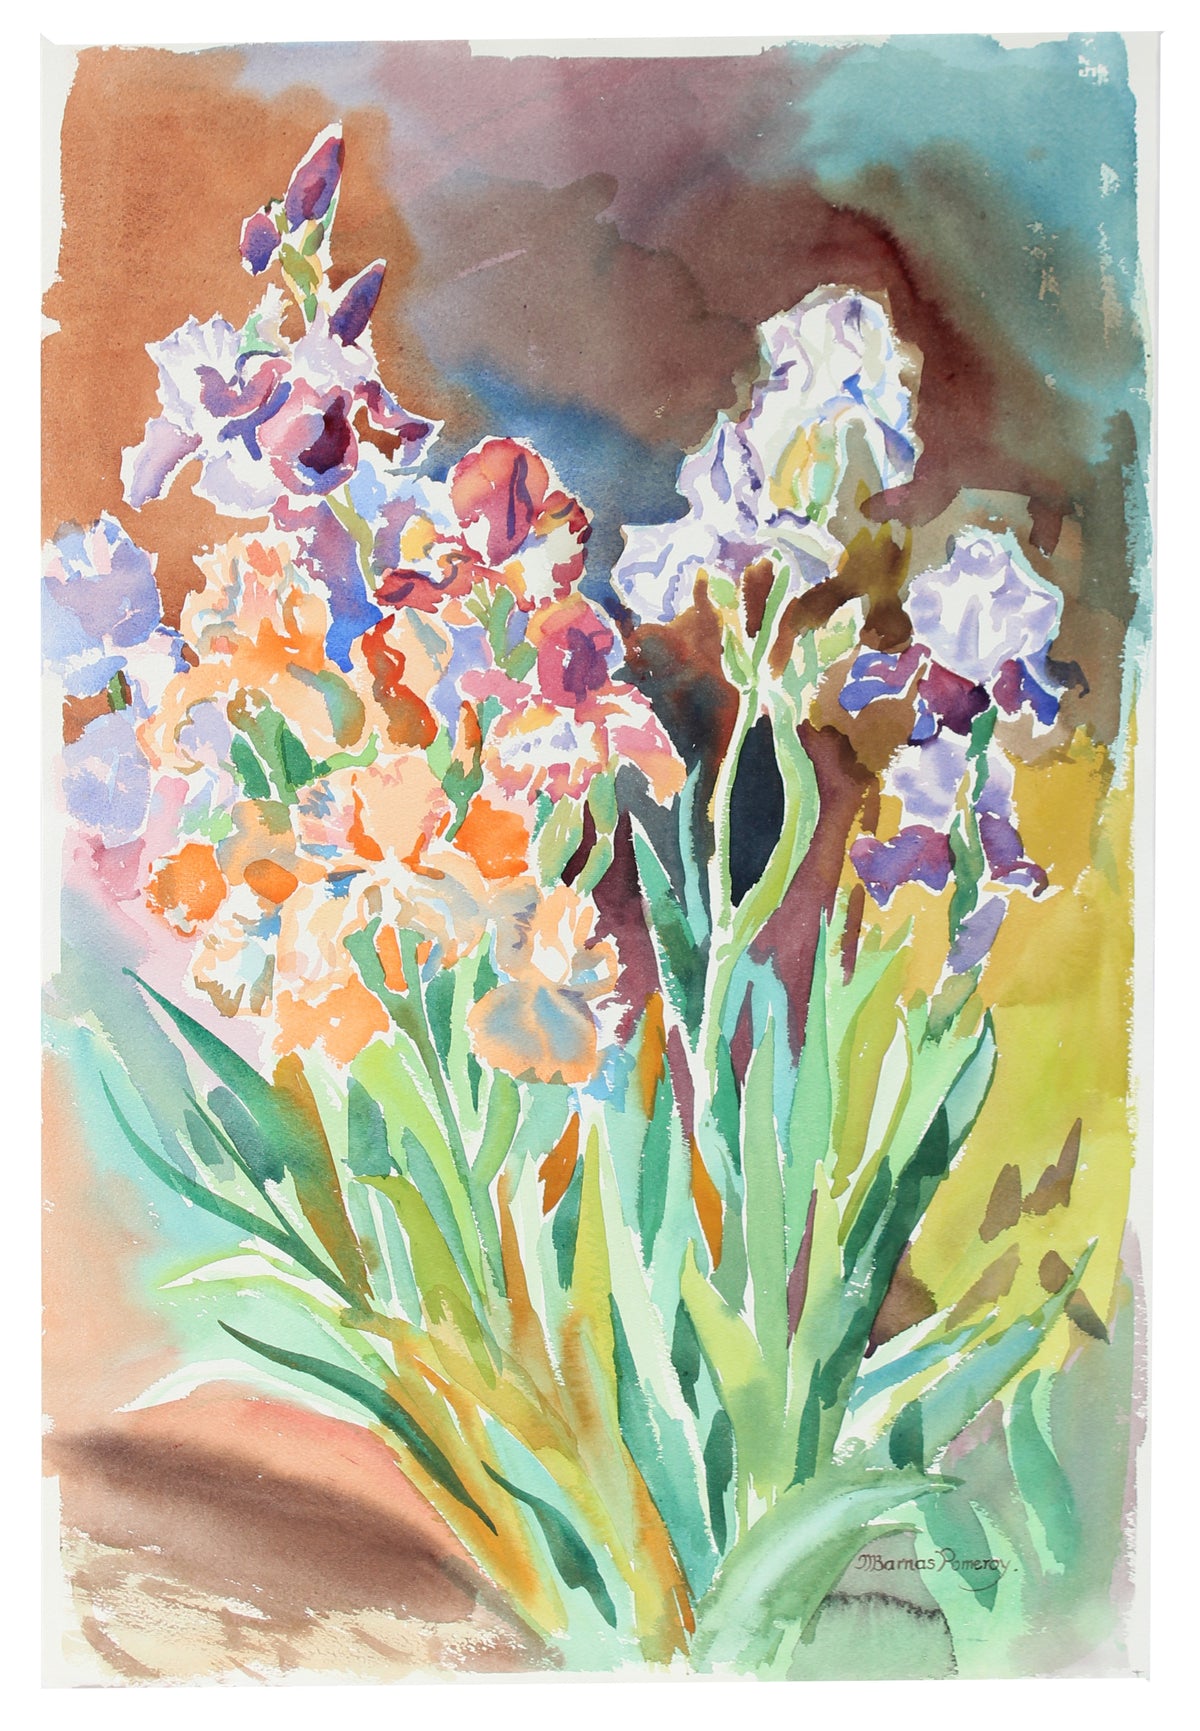 &lt;i&gt;Shirley&#39;s Iris&lt;/i&gt; &lt;br&gt;1982 Watercolor &lt;br&gt;&lt;br&gt;#A3567